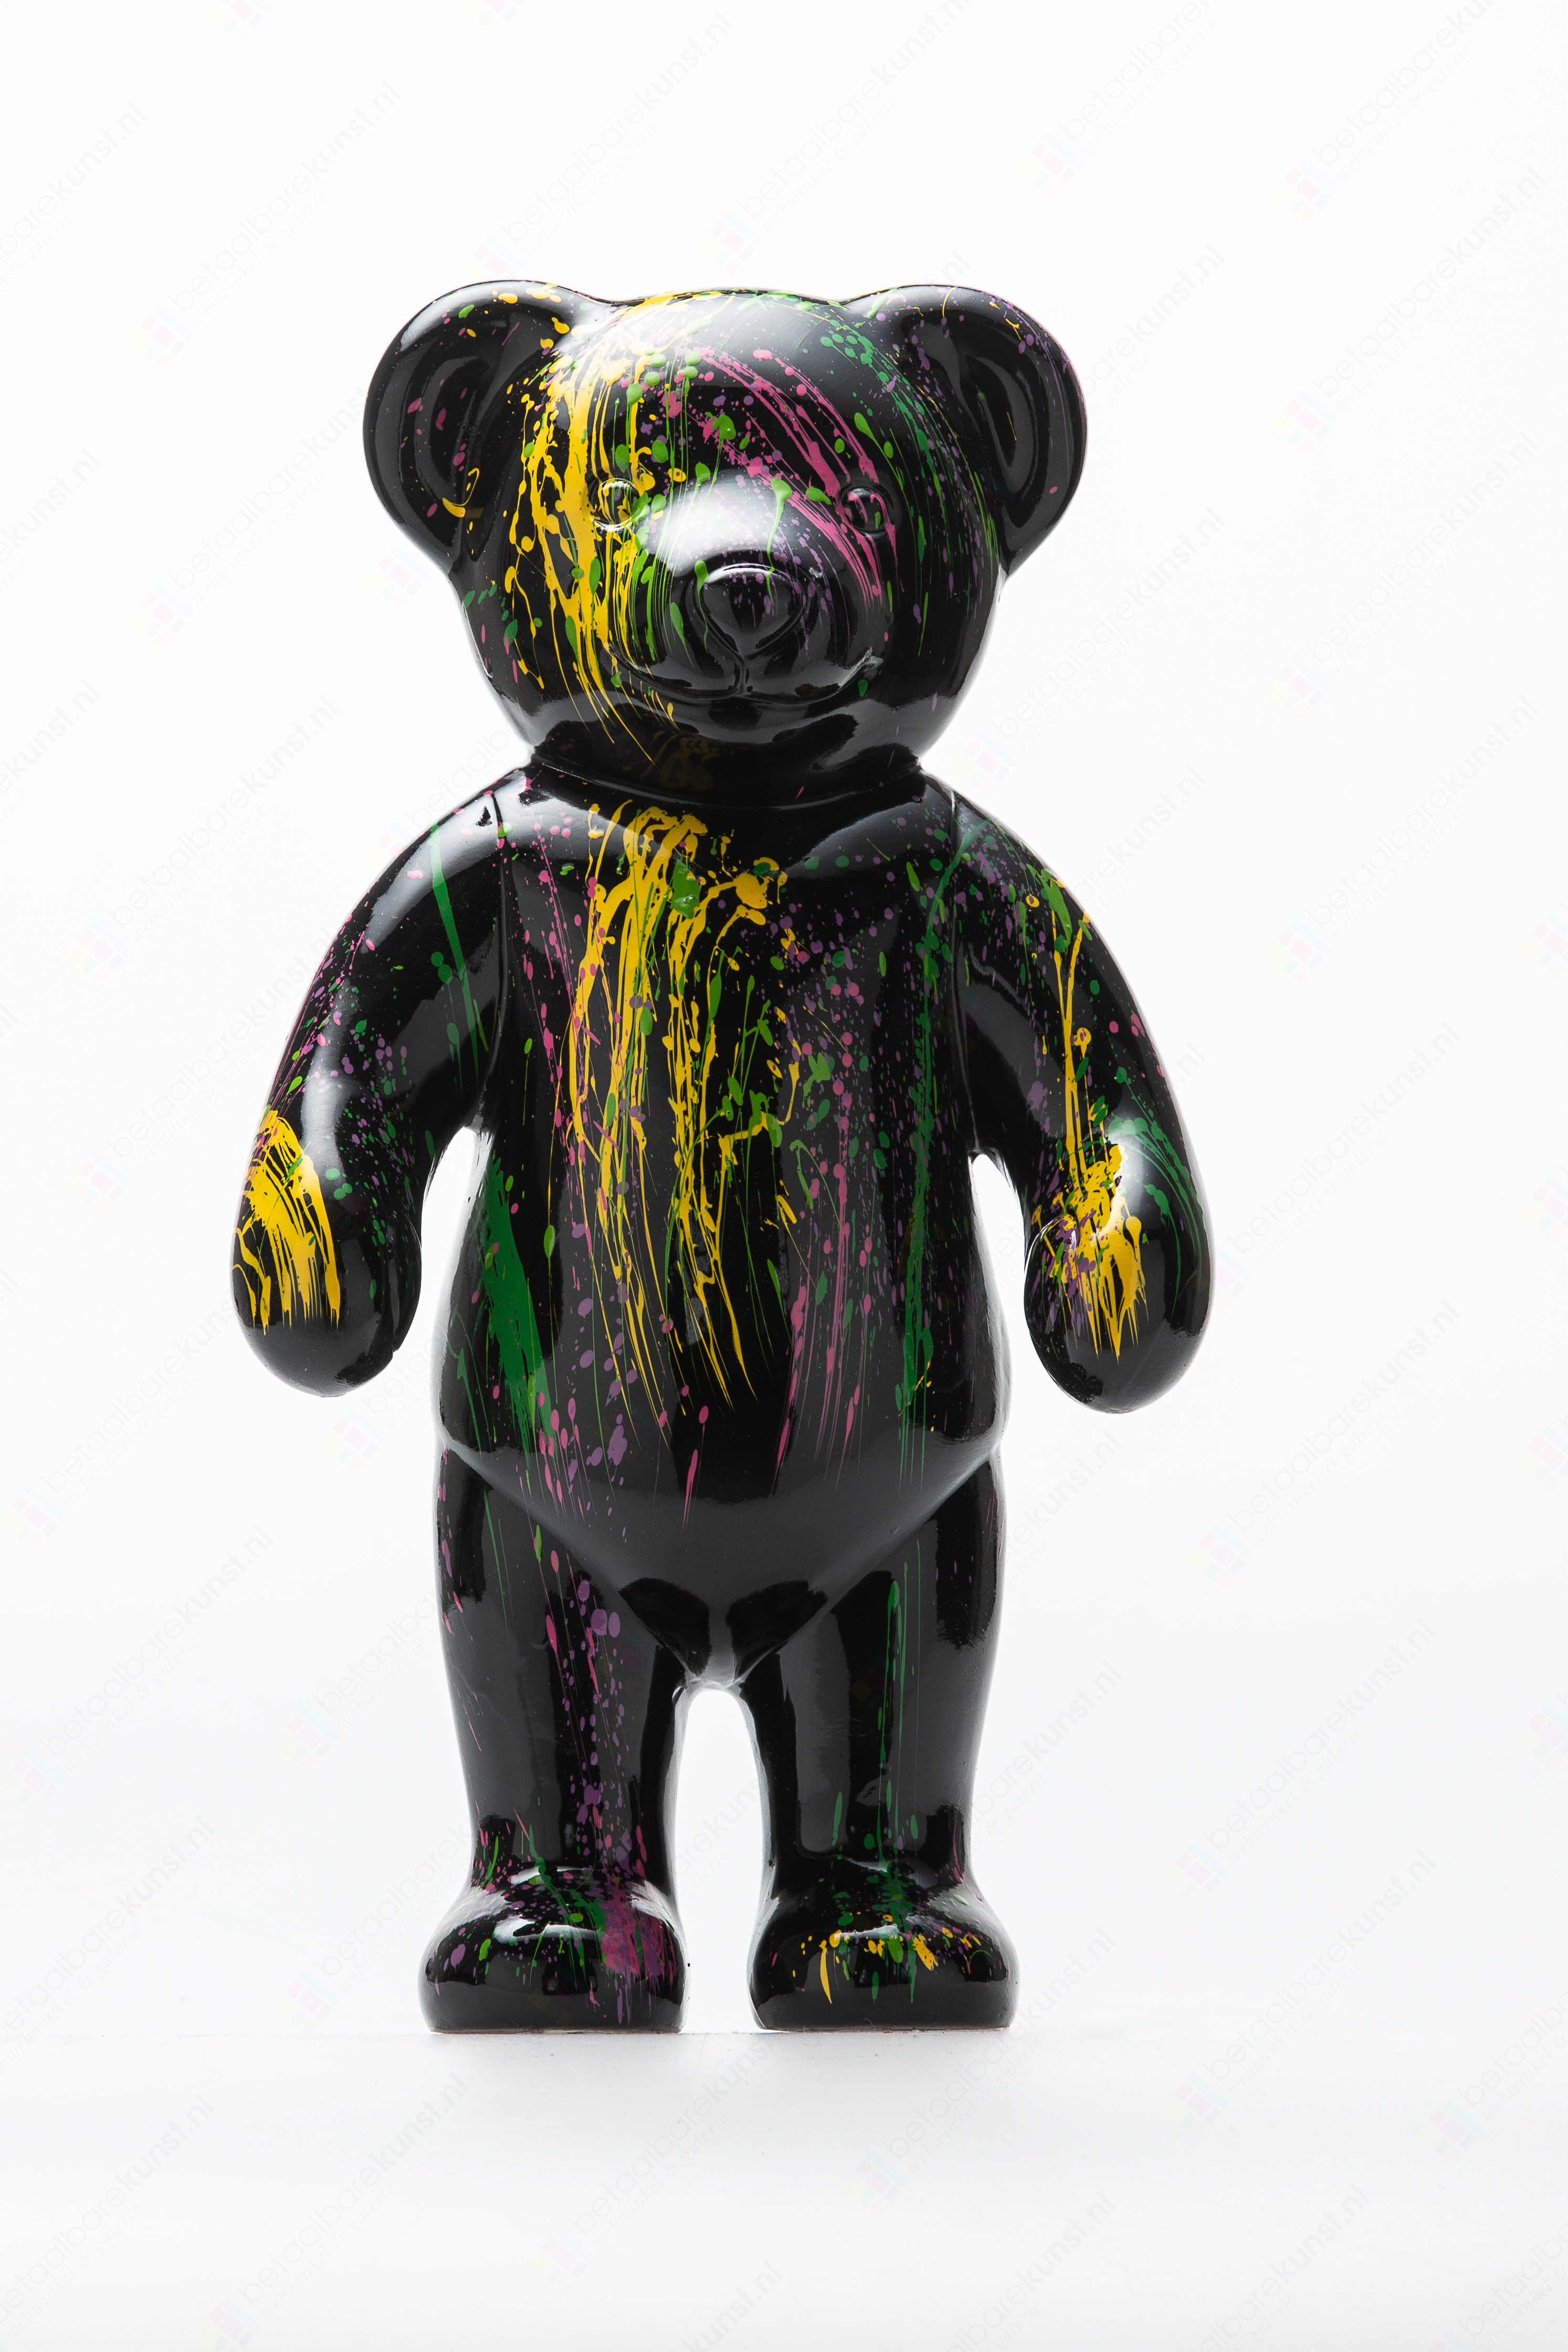 Beeld "Teddy staand splash zwart" te koop Betaalbarekunst.nl. Deze beeldende kunst van kunststof is een echte verrijking voor je huis.